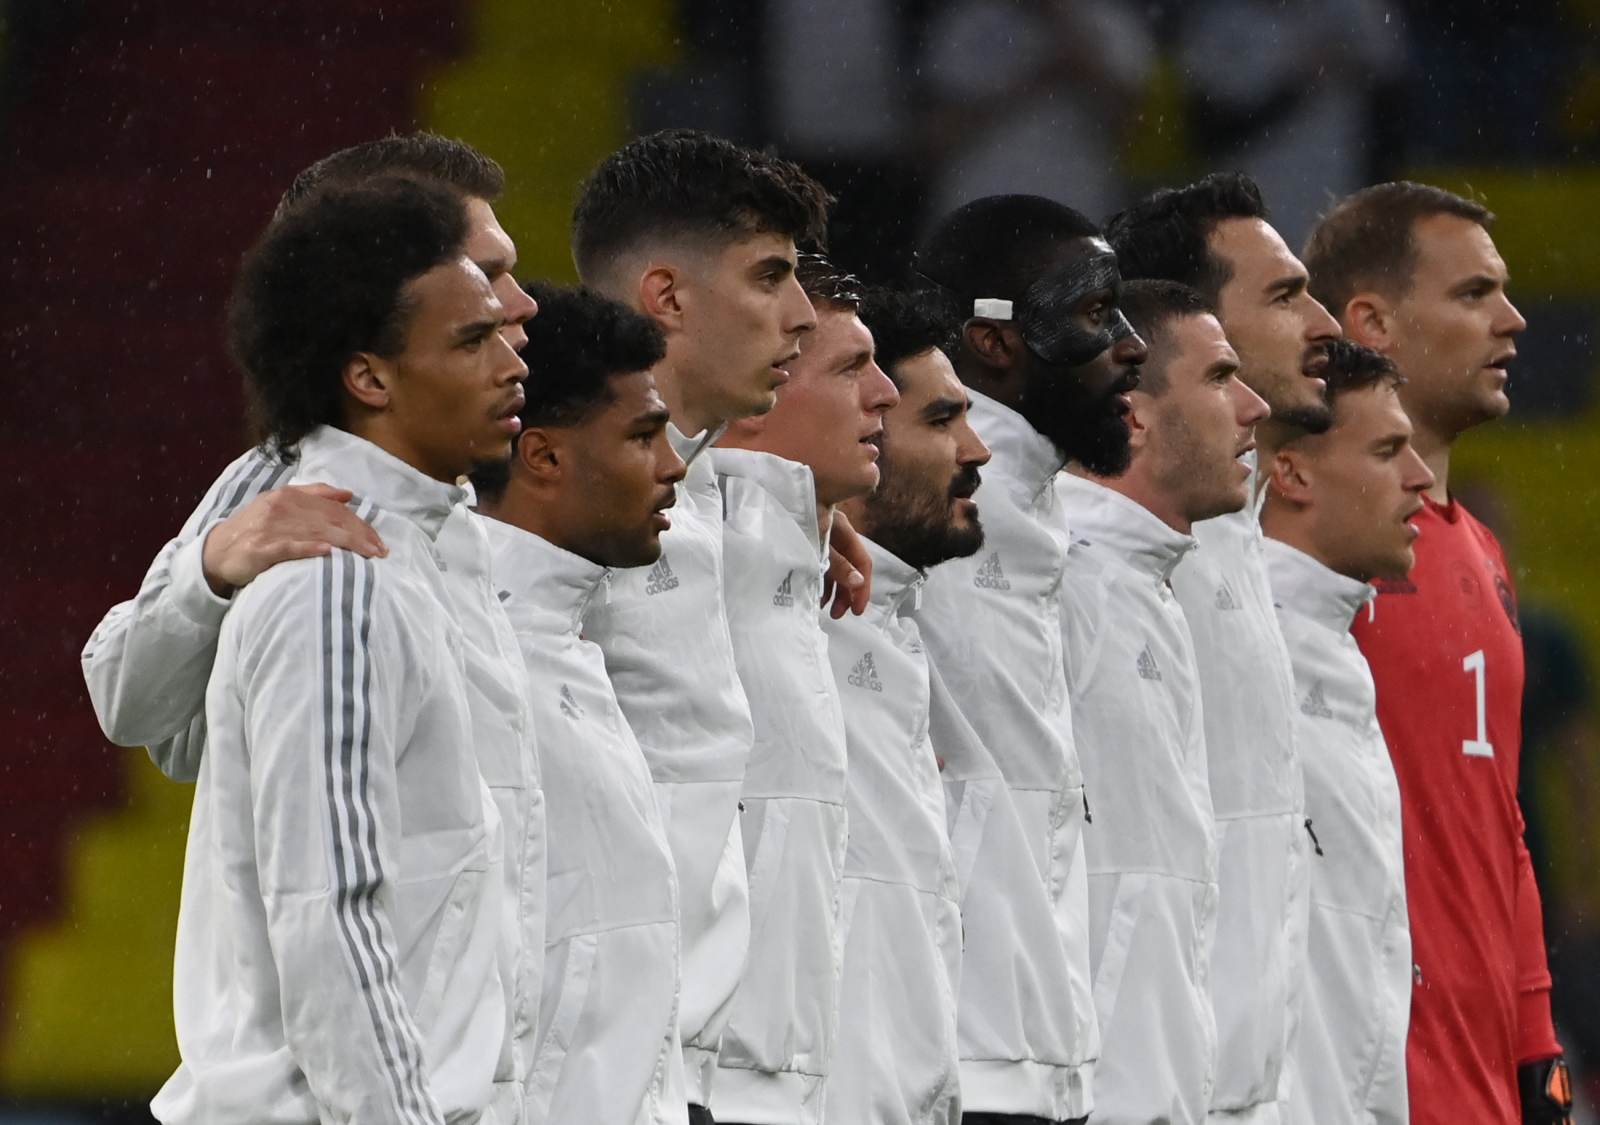 Сборная Германии установила собственный рекорд, завершив четыре матча подряд с одинаковым счётом